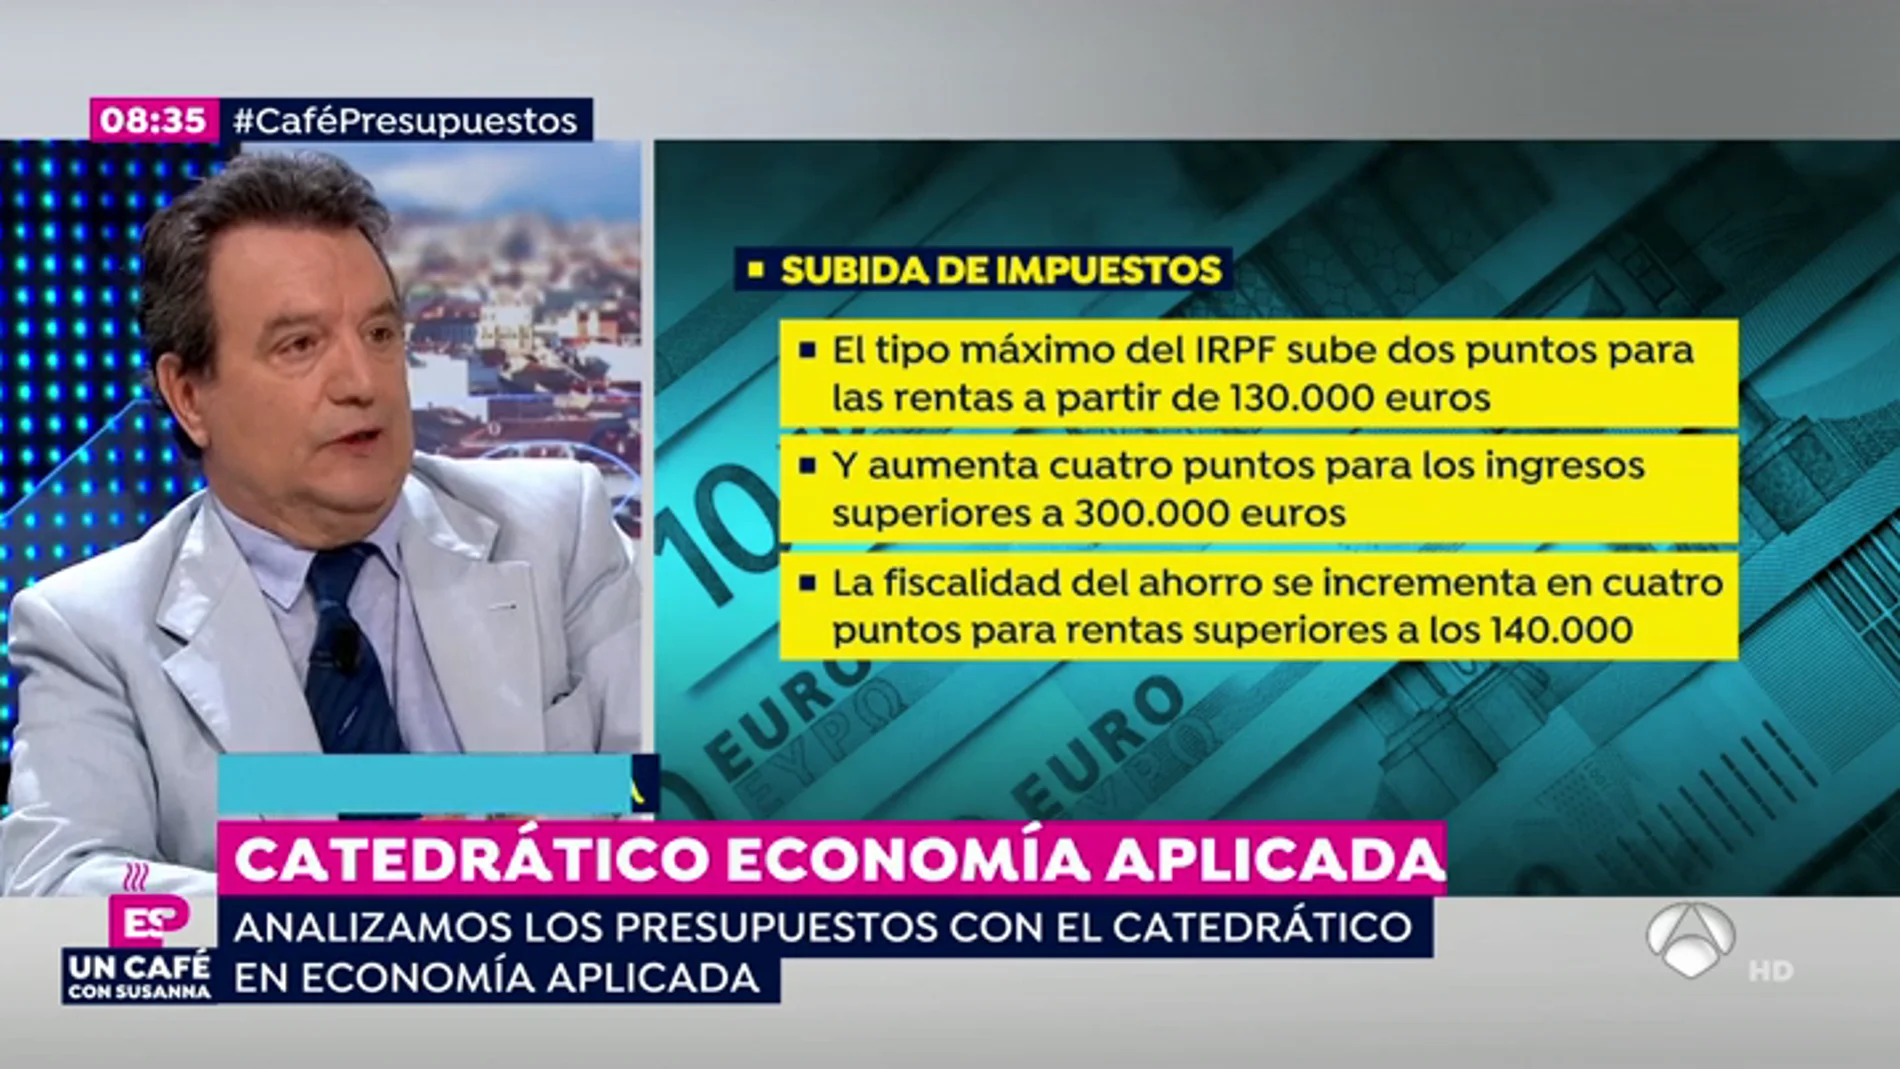 Santos Ruesga: "Los presupuestos no son tan apocalípticos pero tendrían que pensar más en fórmulas a futuro"